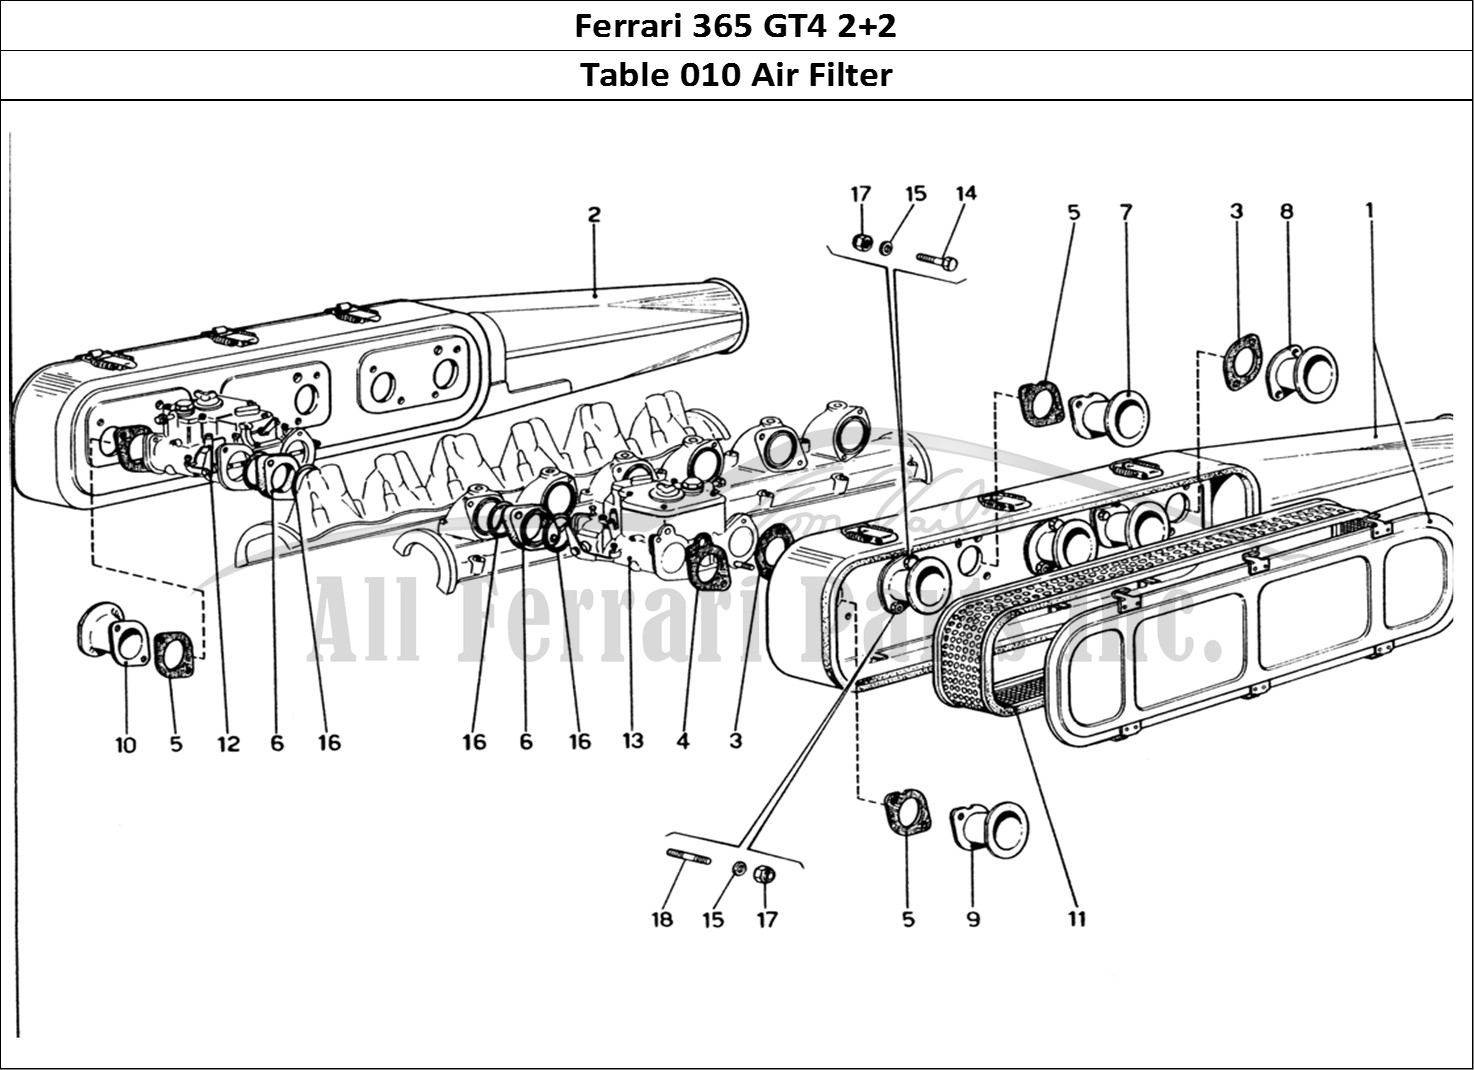 Ferrari Parts Ferrari 365 GT4 2+2 (1973) Page 010 Air Filters